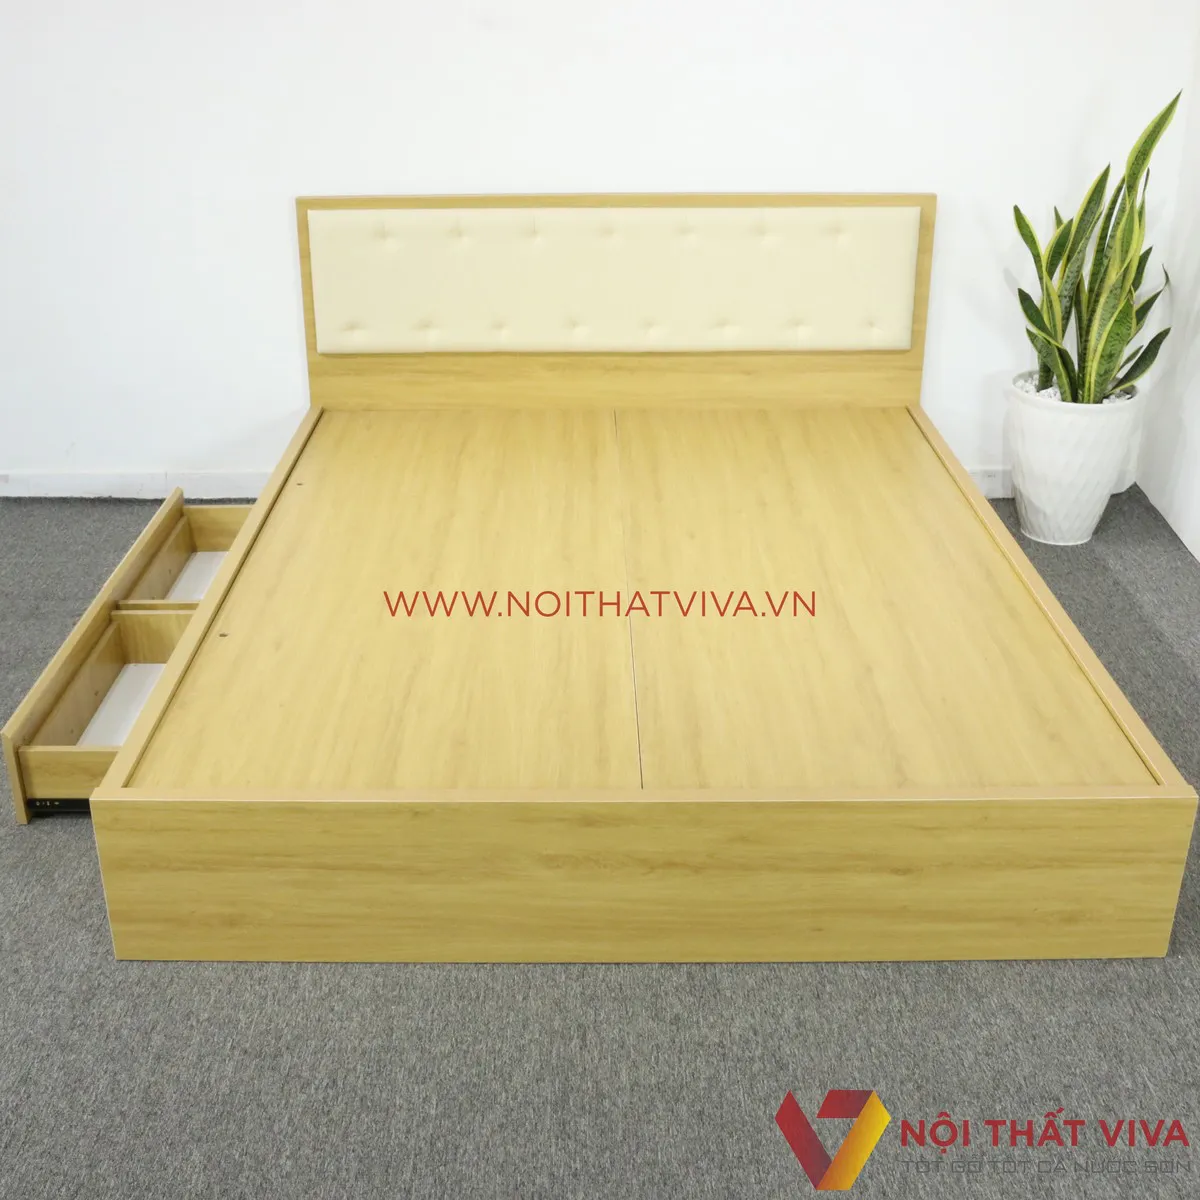 Từ A đến Z về giường ngủ 1m2 gỗ công nghiệp: Cấu tạo, mẫu đẹp, giá bao nhiêu?